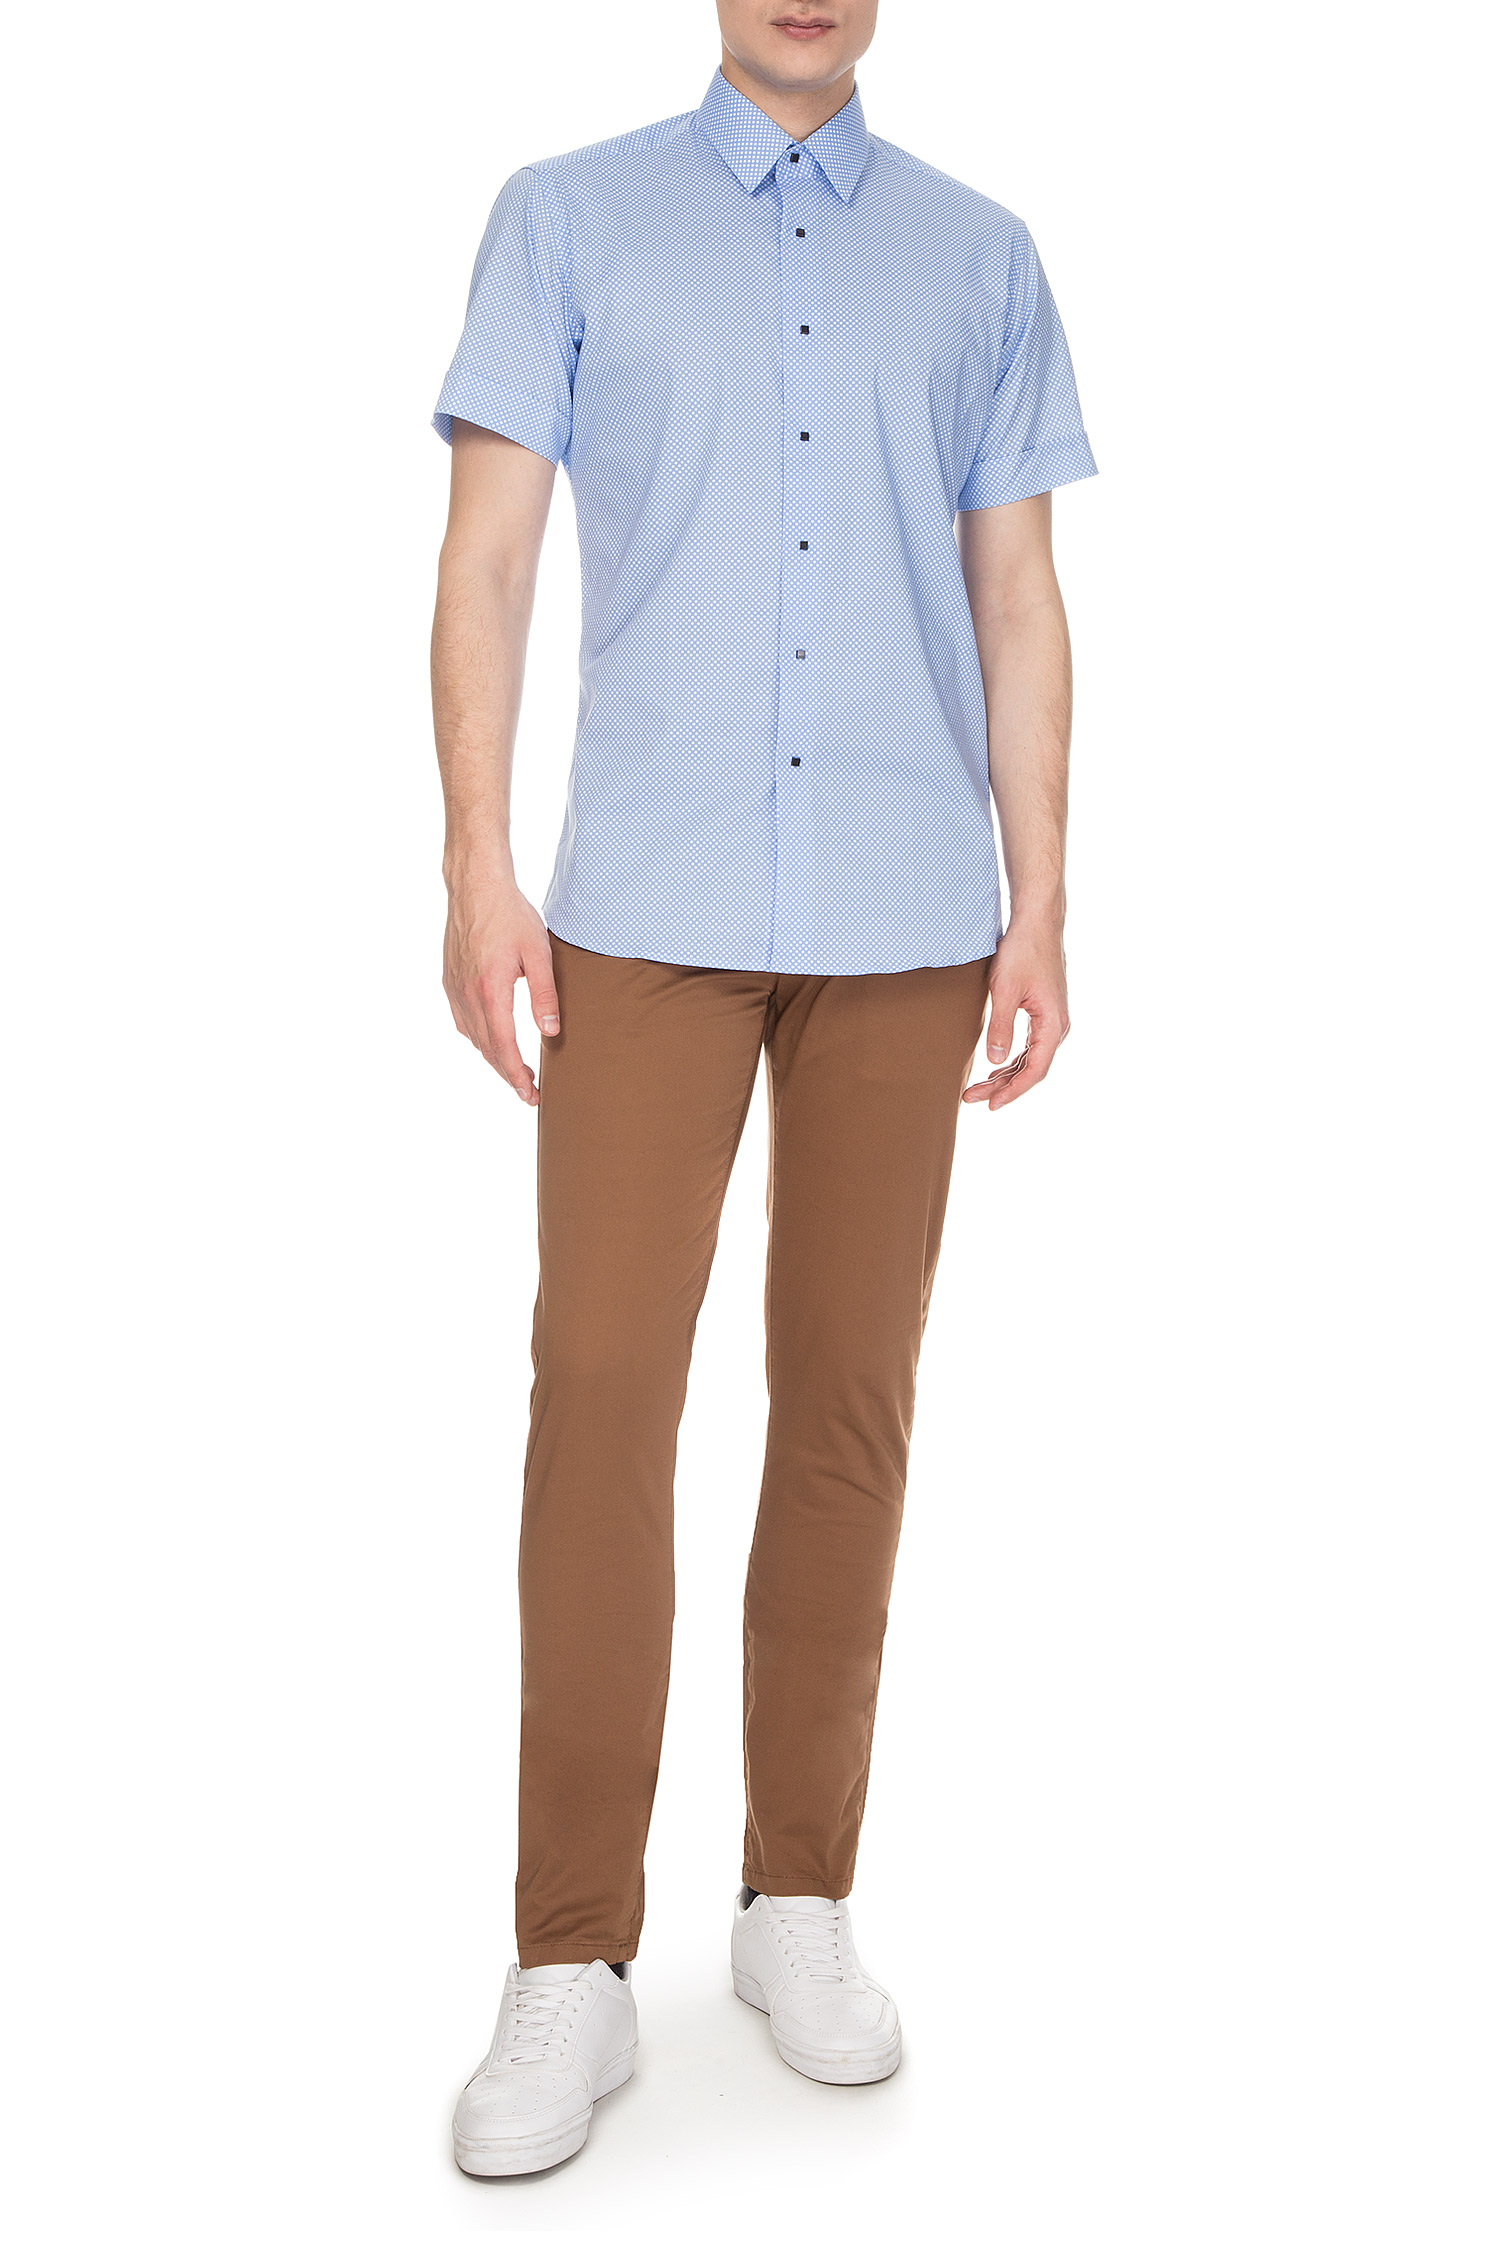 Чоловіча блакитна сорочка з візерунком Slim fit Karl Lagerfeld 681610.606500;620